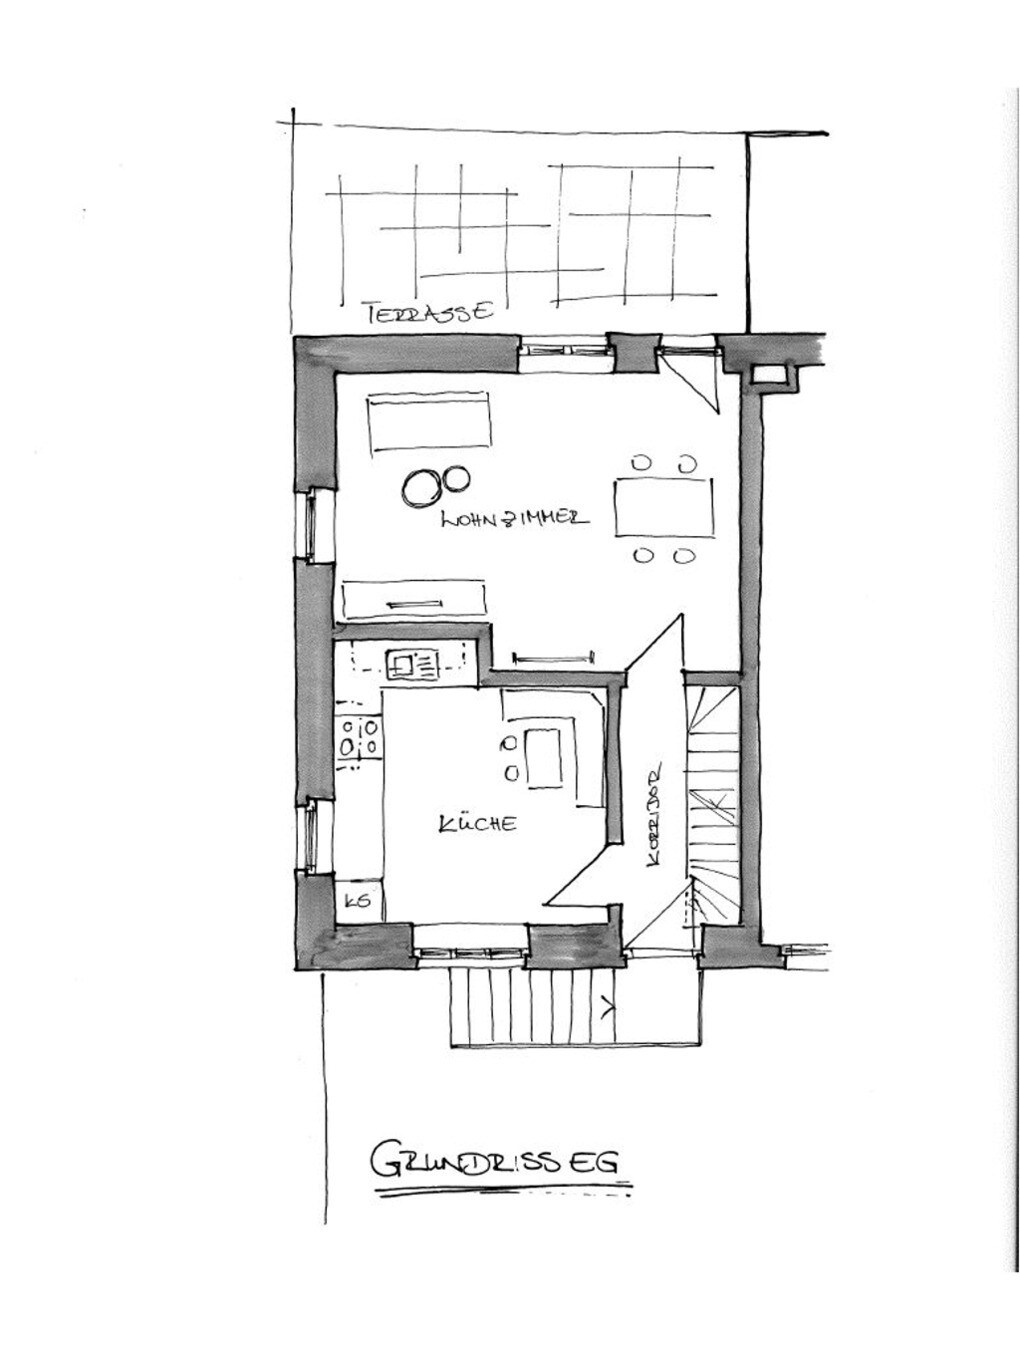 位于Öhningen的公寓，可容纳4位房客，面积为80平方米（ 117287 ）